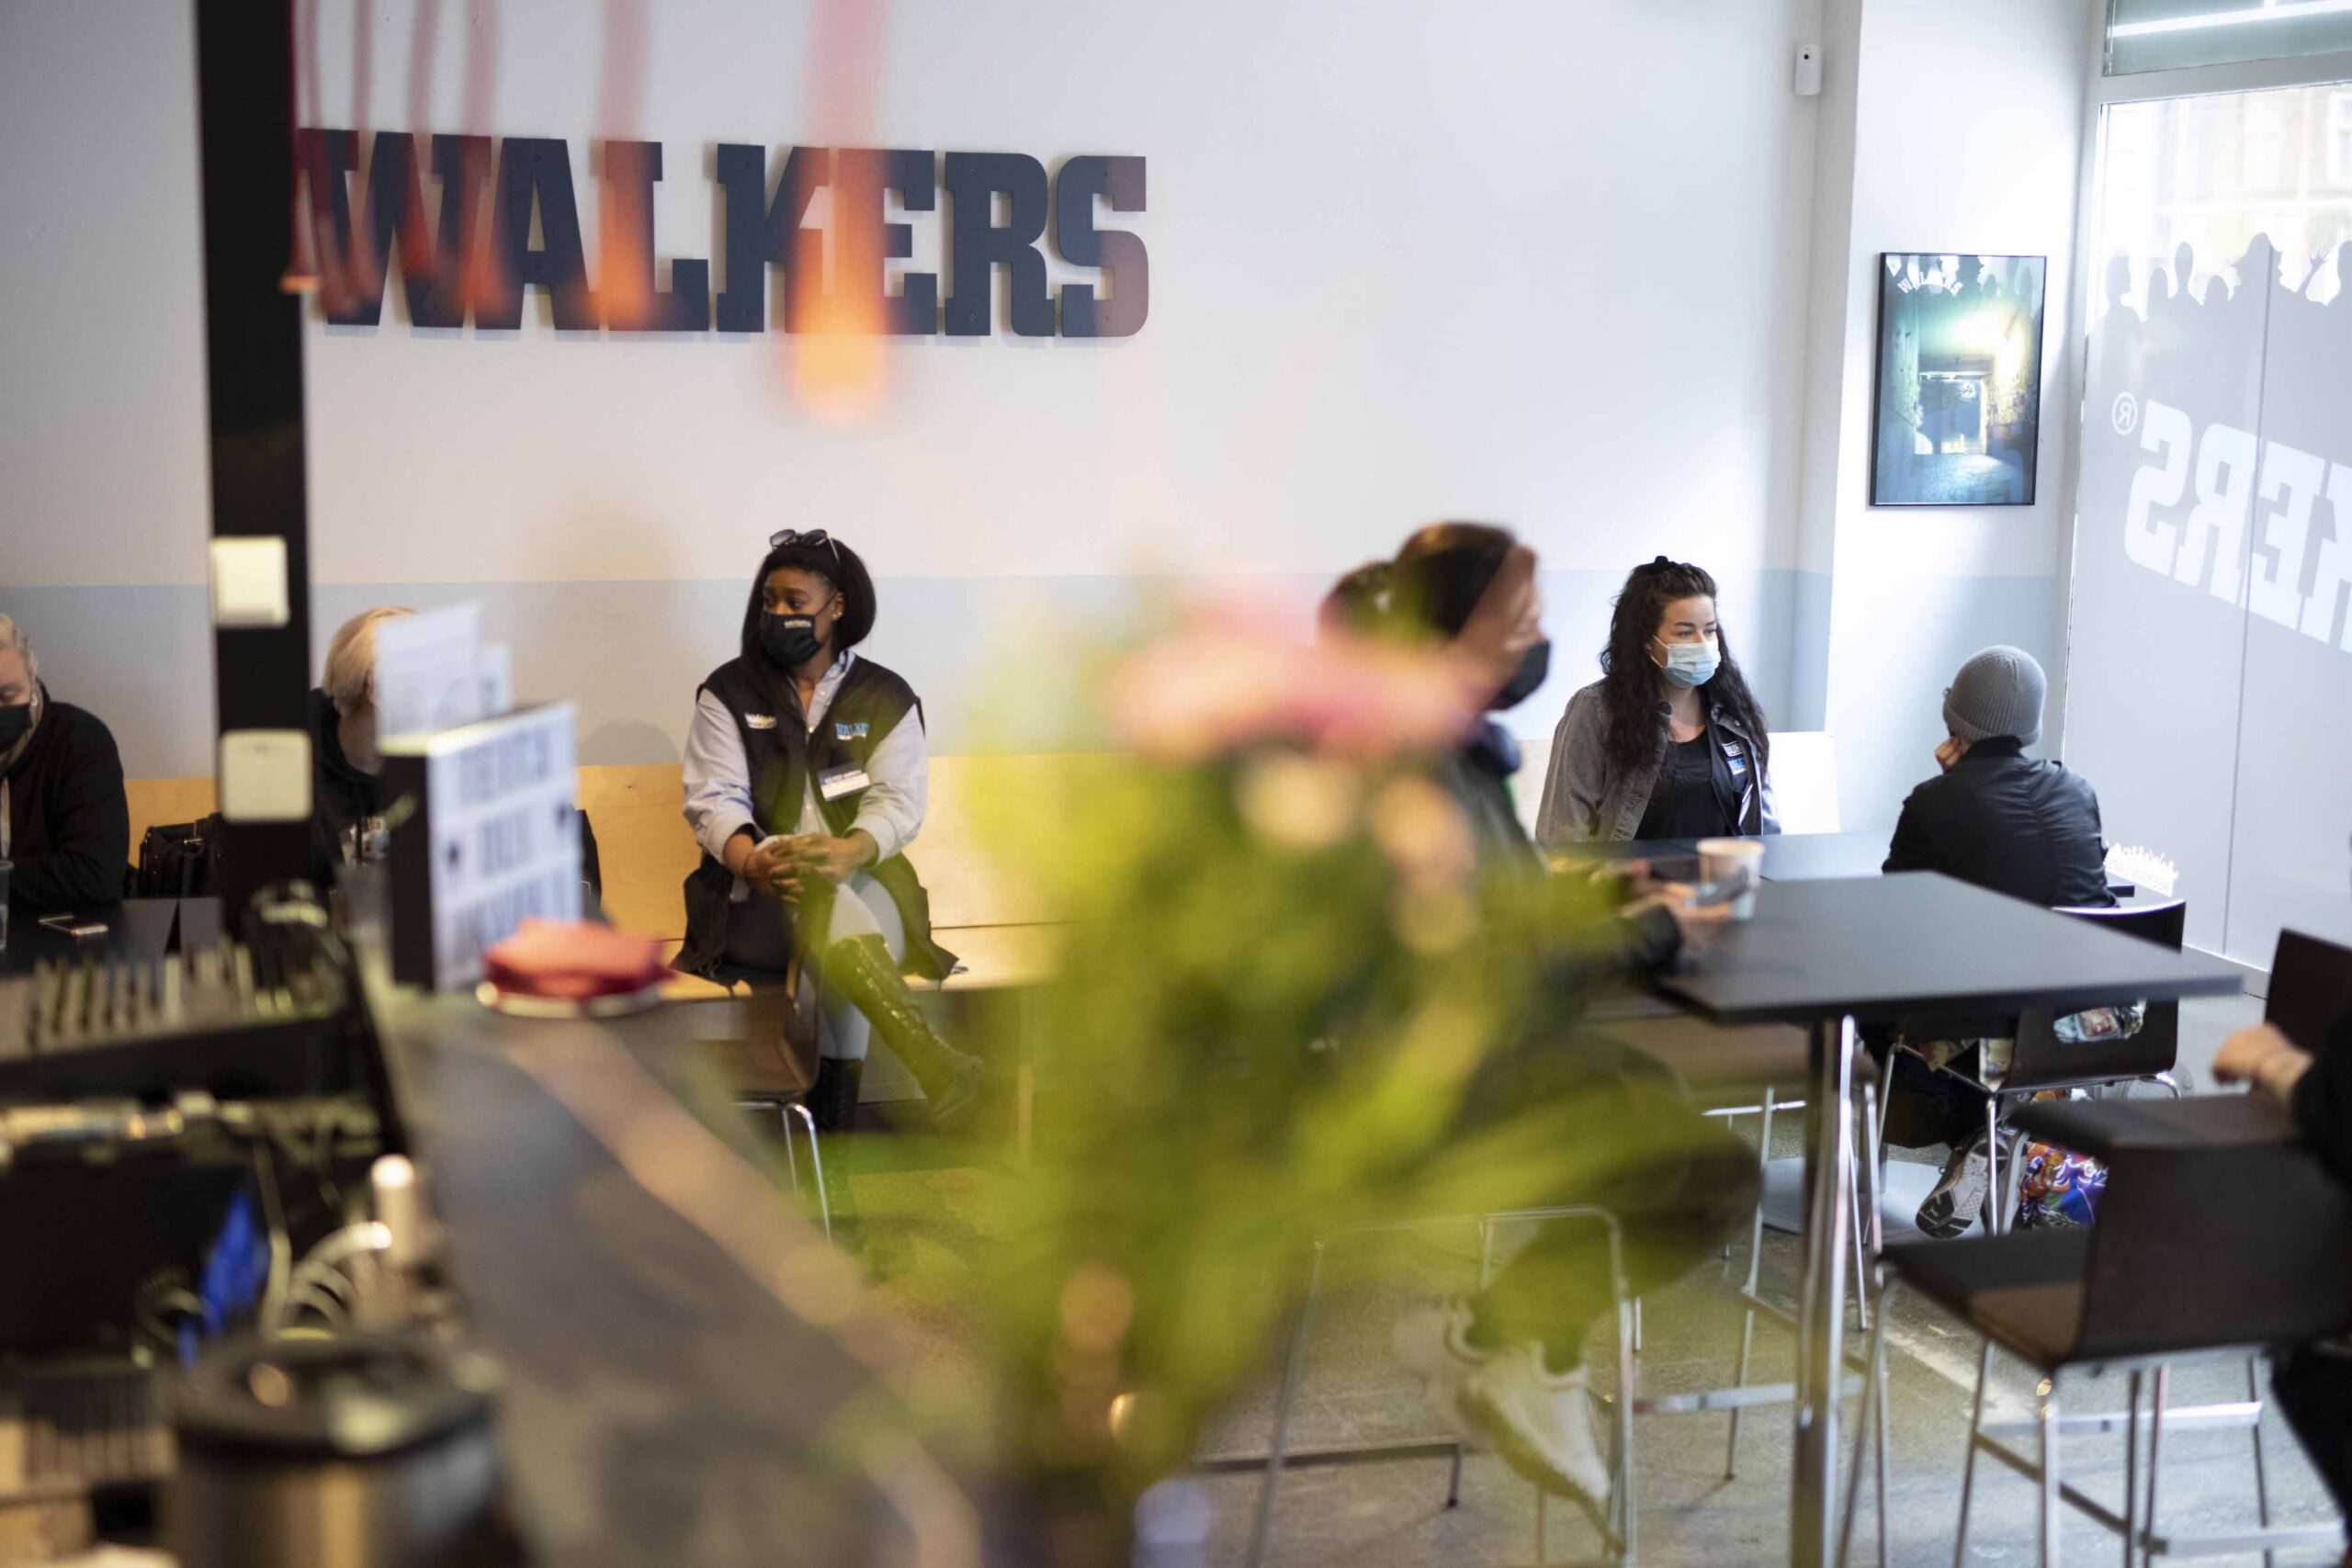 Ihmisiä istumassa kahvilassa, jonka seinällä lukee Walkers